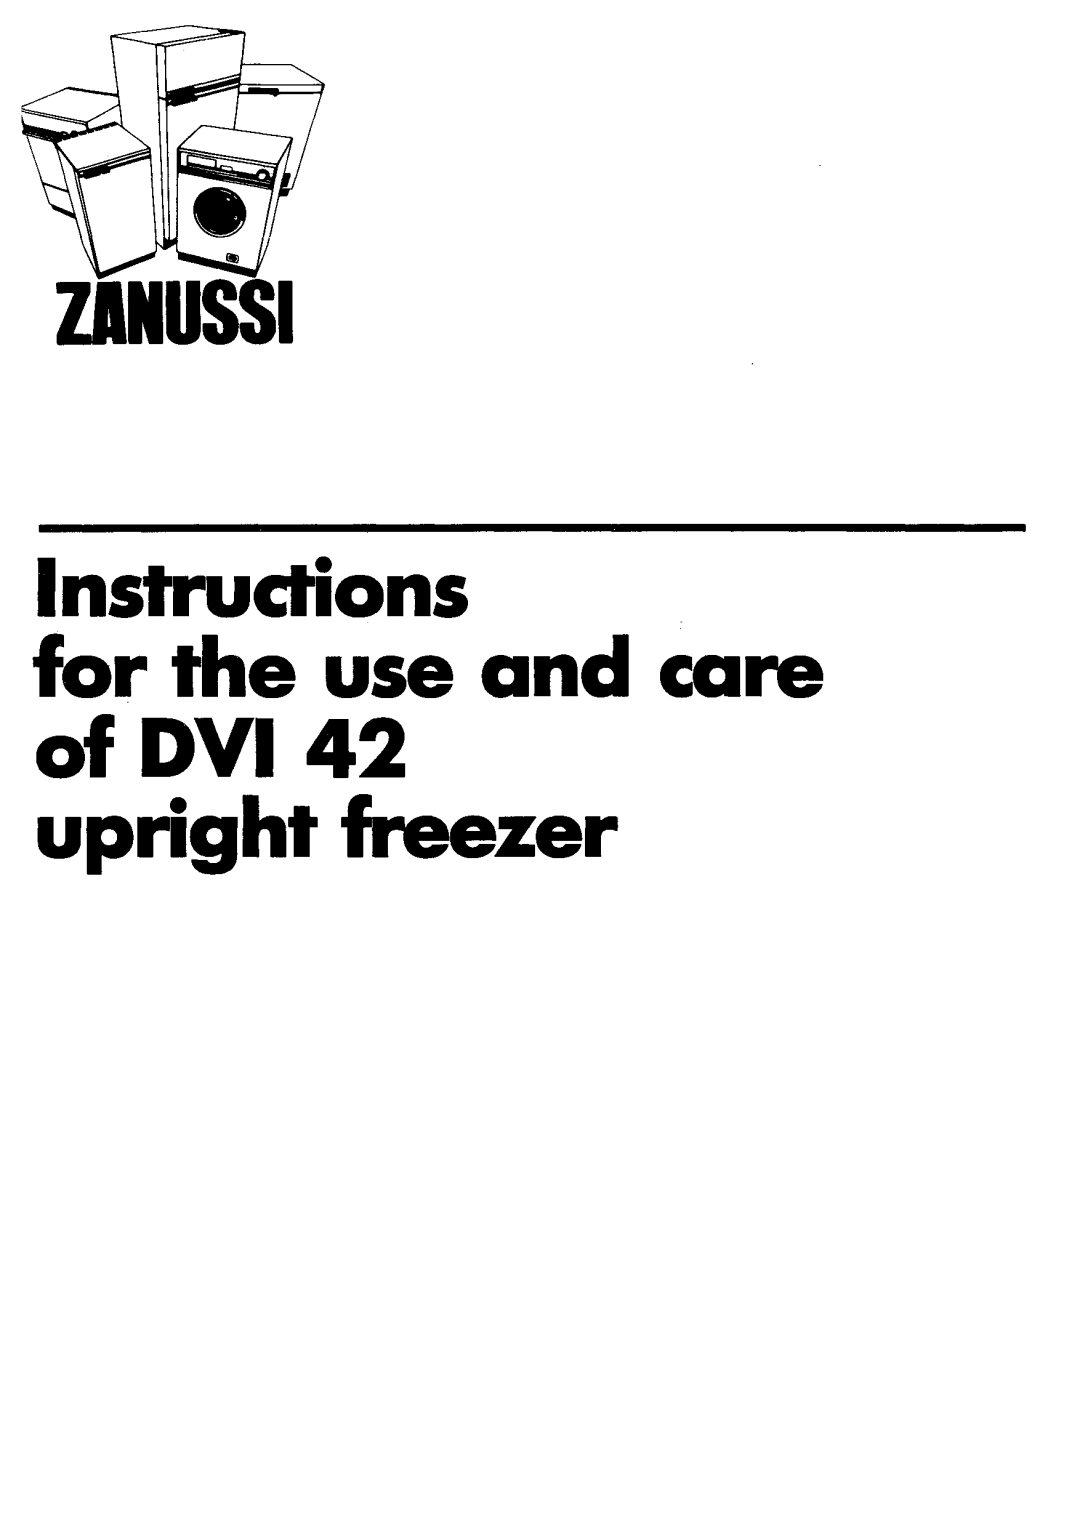 Zanussi DVi42 manual 